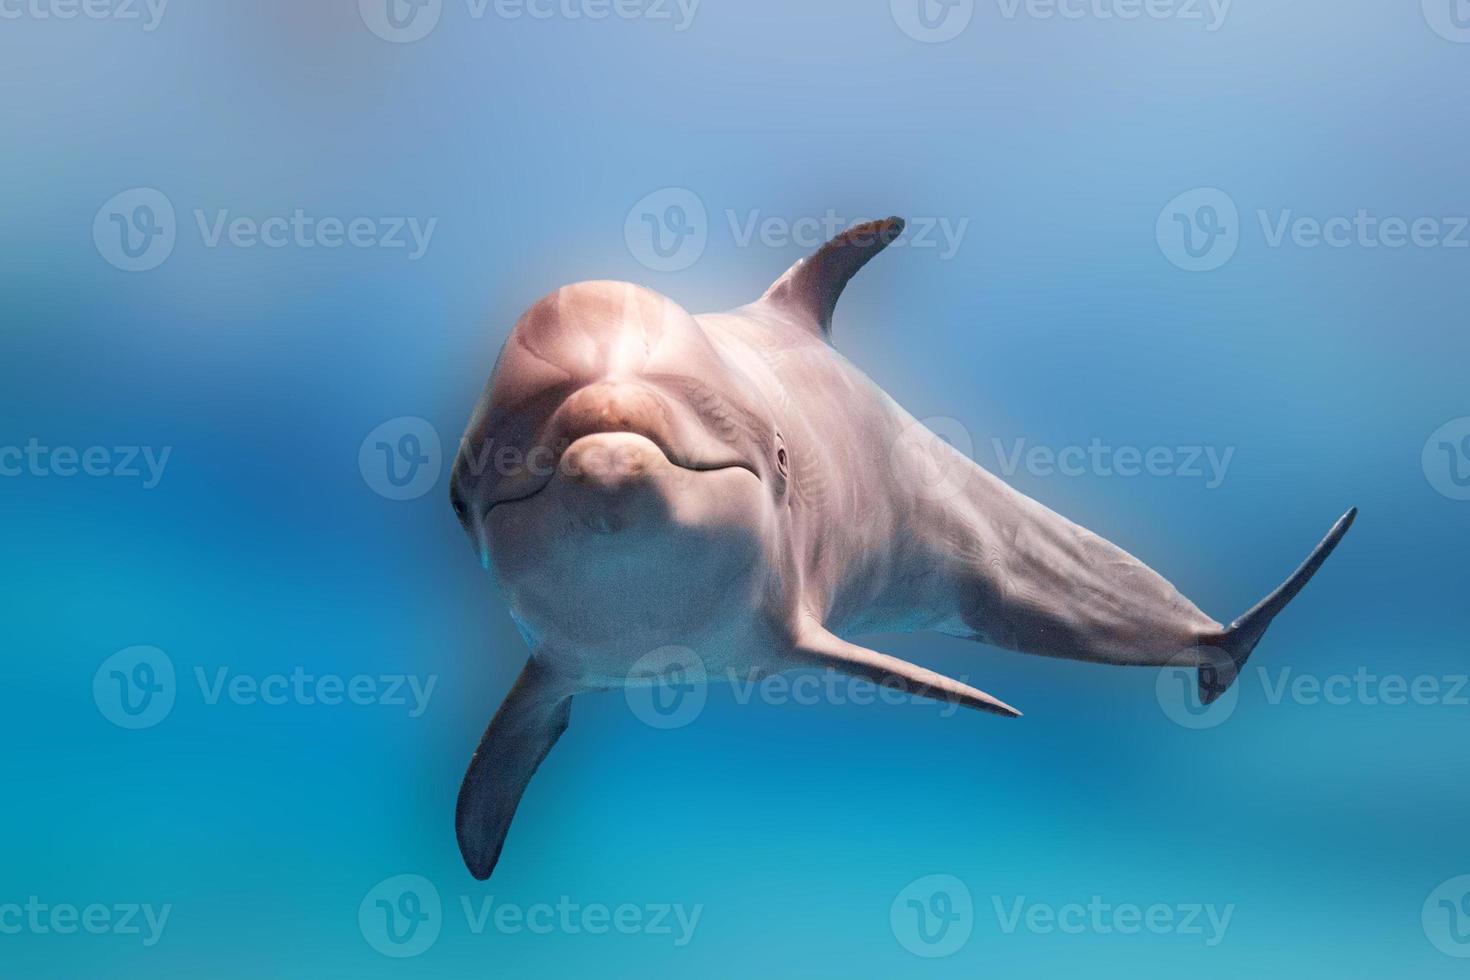 golfinho debaixo d'água no oceano azul olhar de perto foto